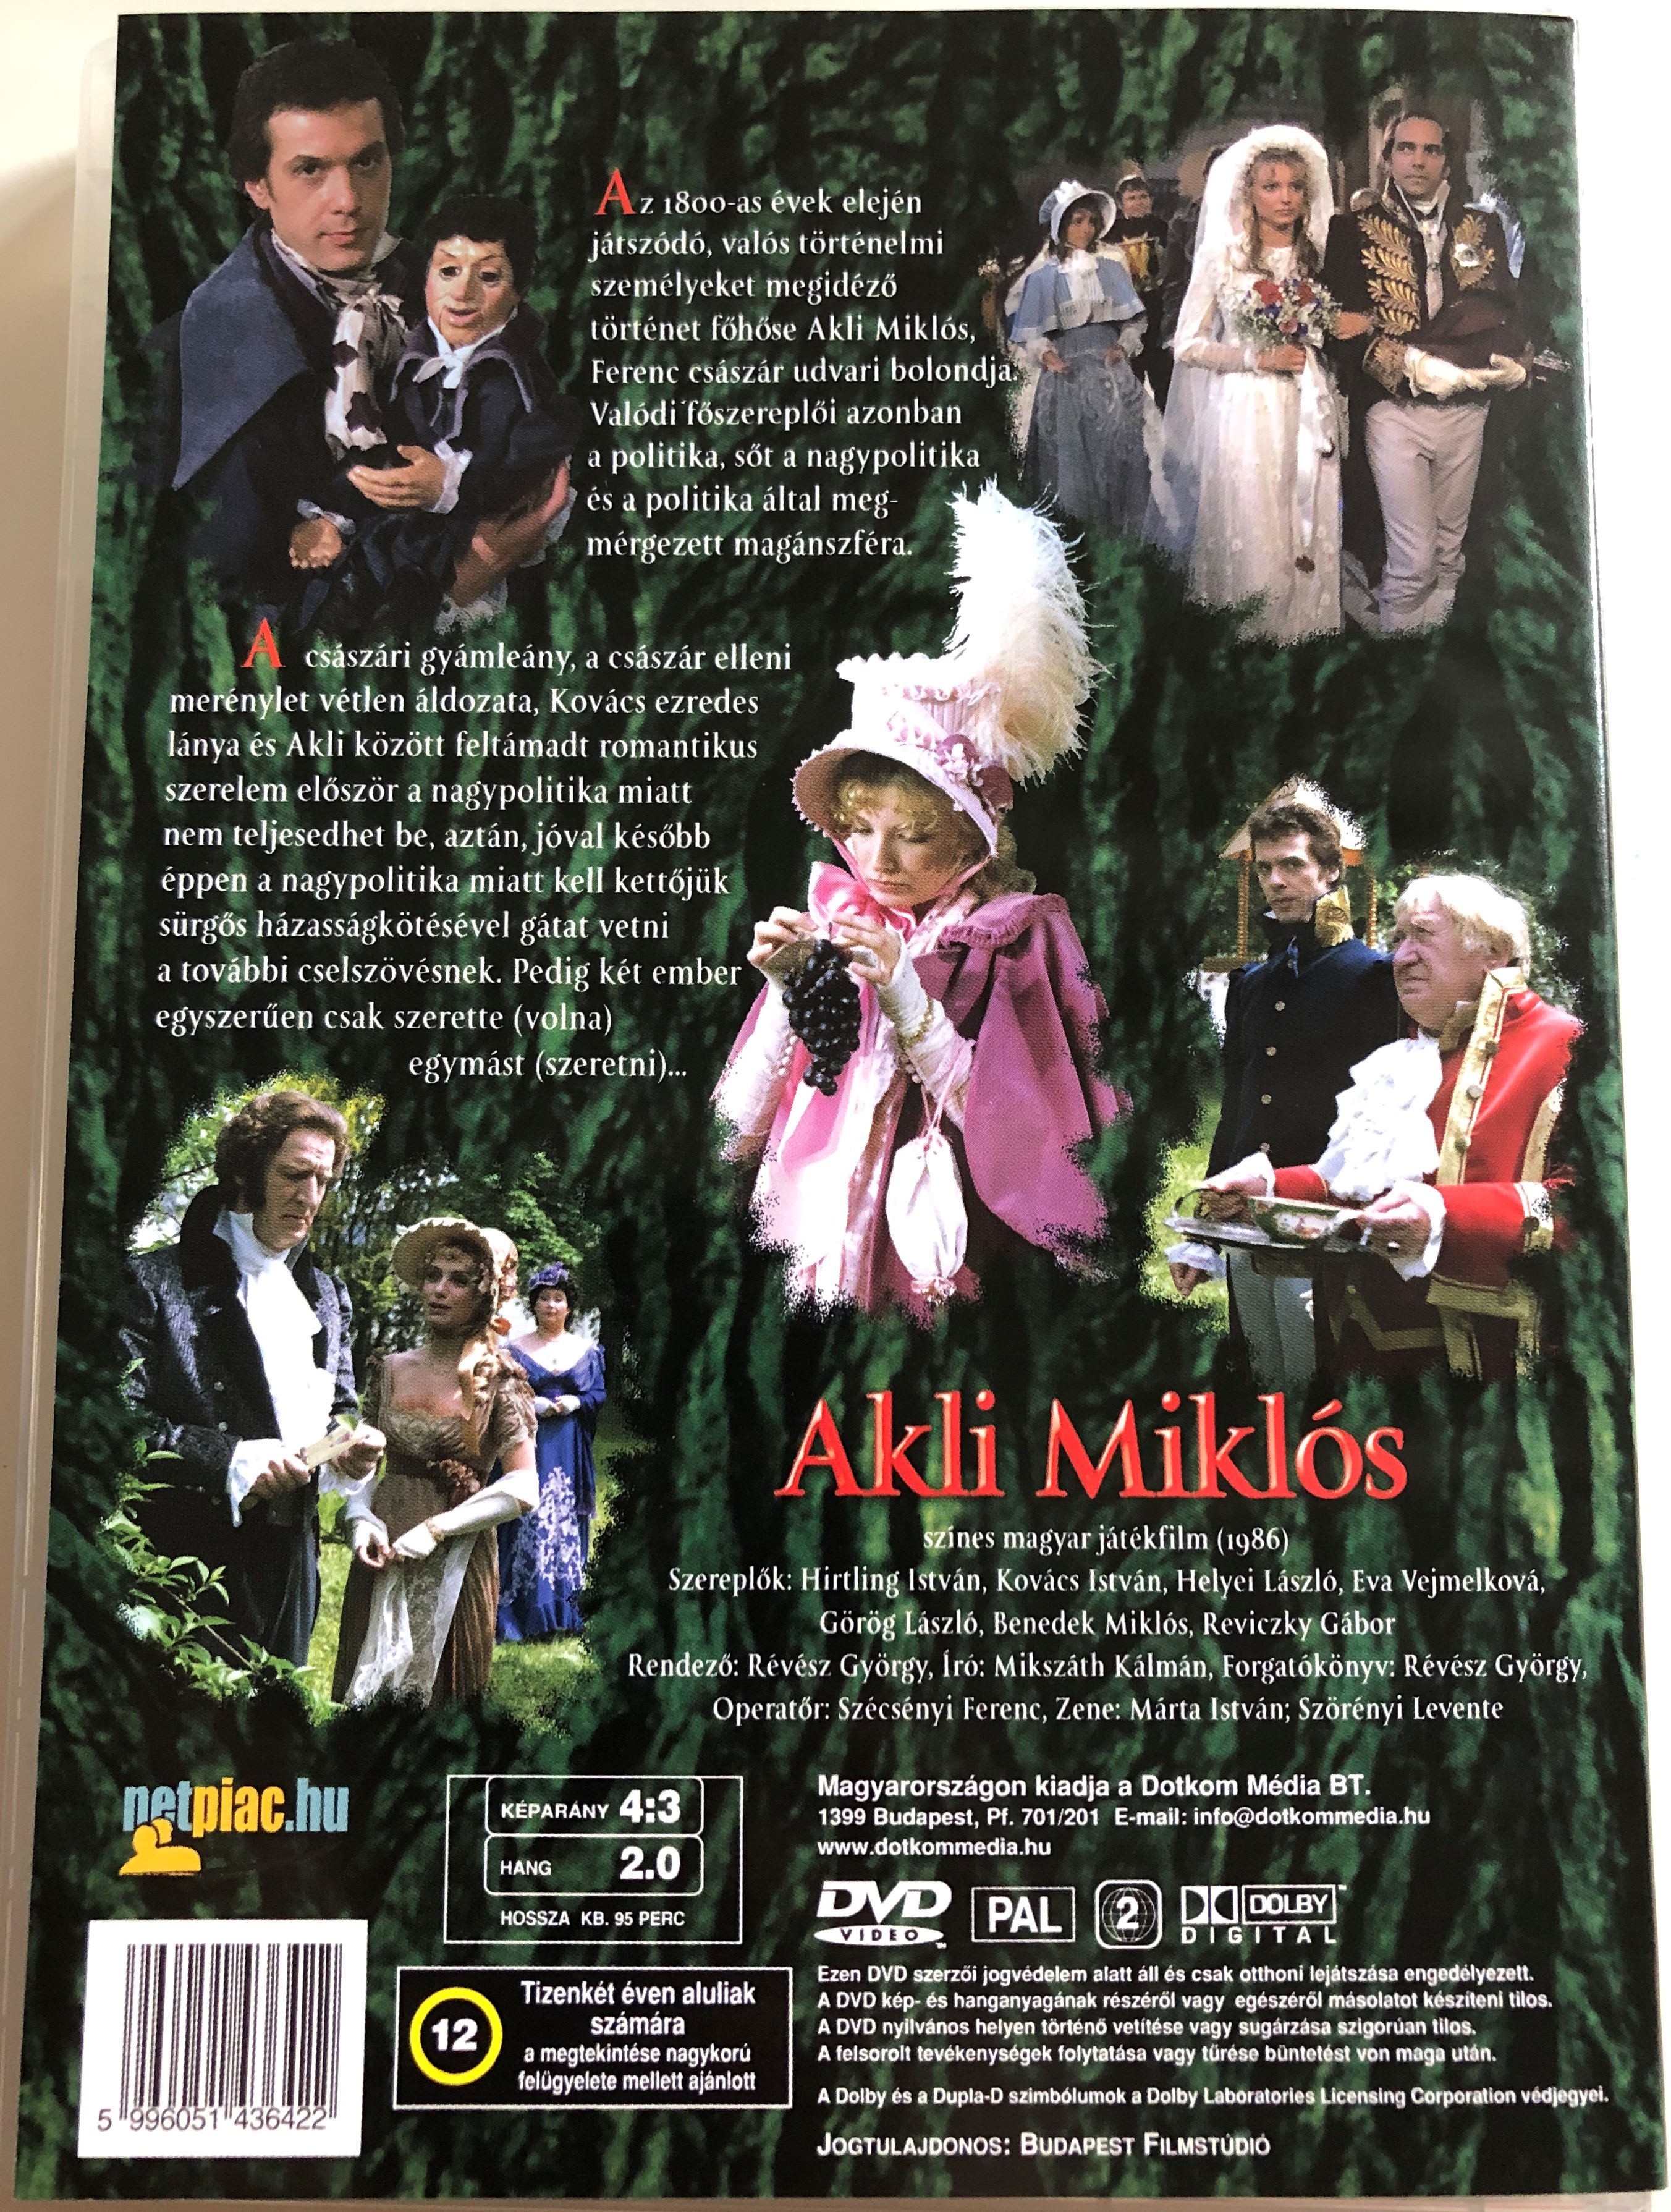 Akli Miklós DVD 1986 Mikszáth Kálmán regénye alapján 1